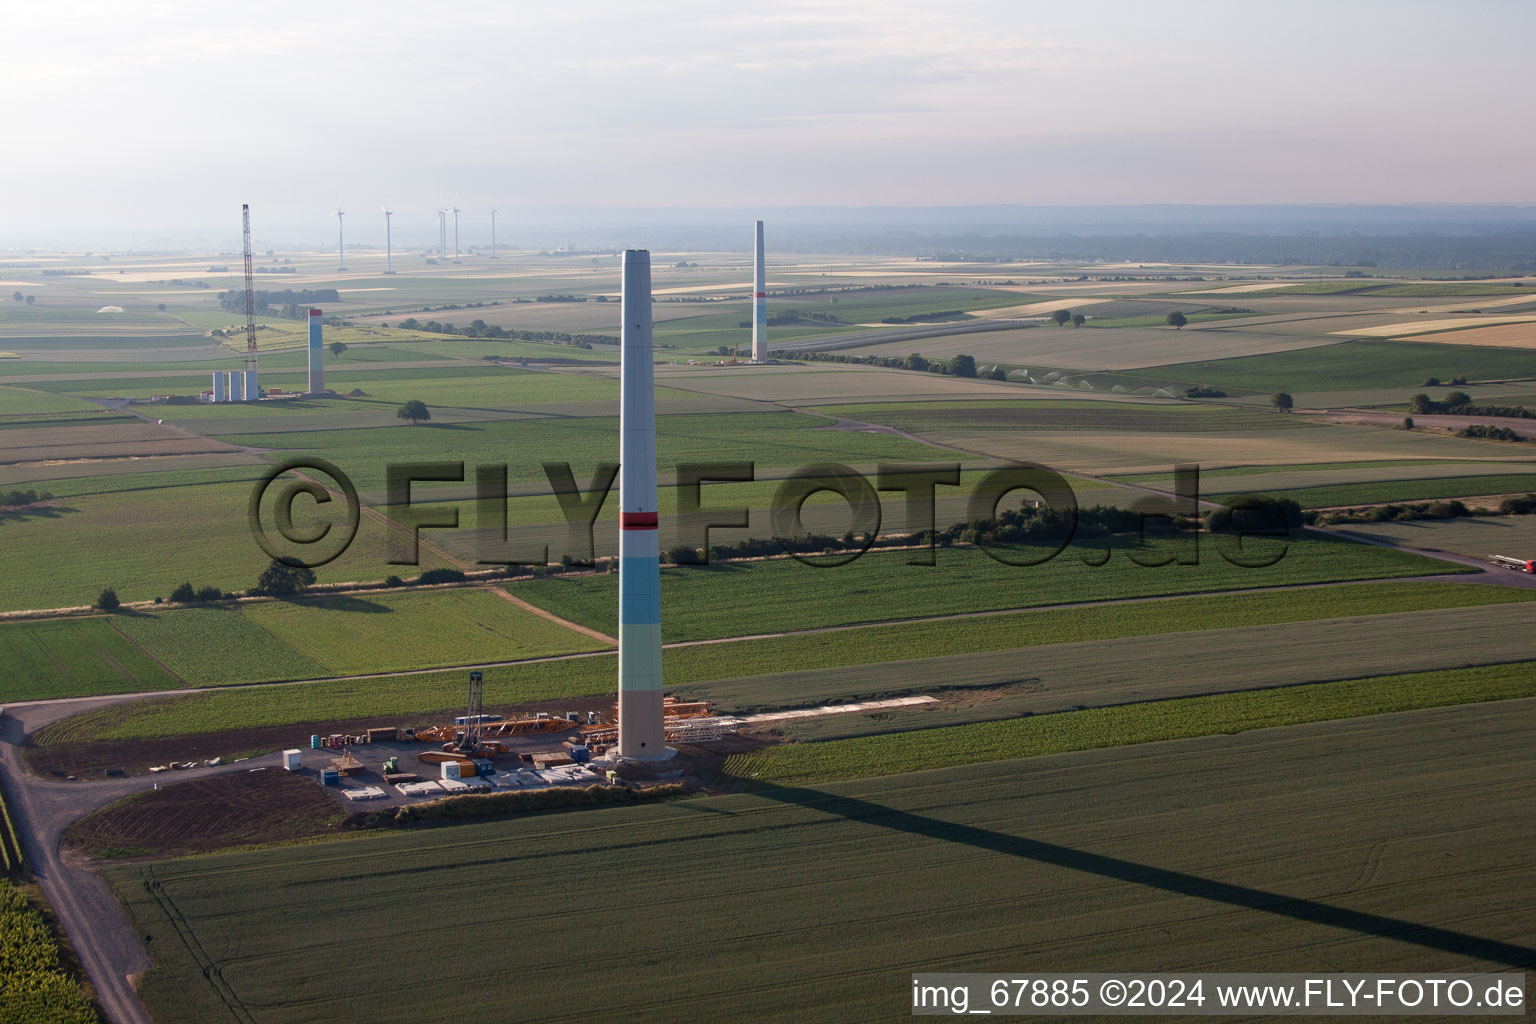 Nouveau parc éolien à Offenbach an der Queich dans le département Rhénanie-Palatinat, Allemagne vue du ciel